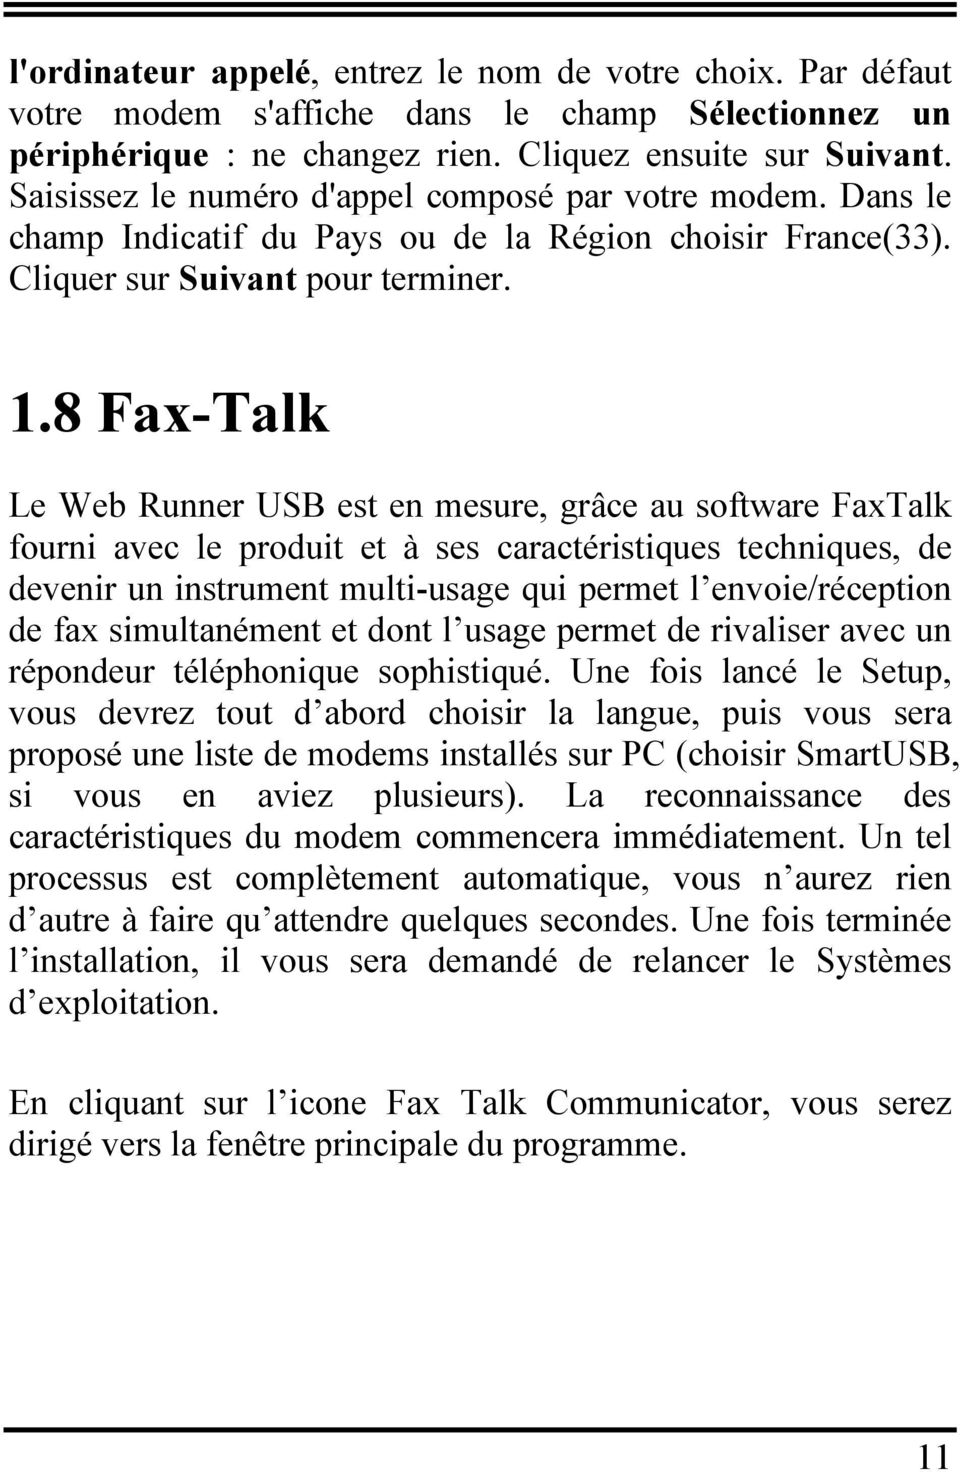 8 Fax-Talk Le Web Runner USB est en mesure, grâce au software FaxTalk fourni avec le produit et à ses caractéristiques techniques, de devenir un instrument multi-usage qui permet l envoie/réception